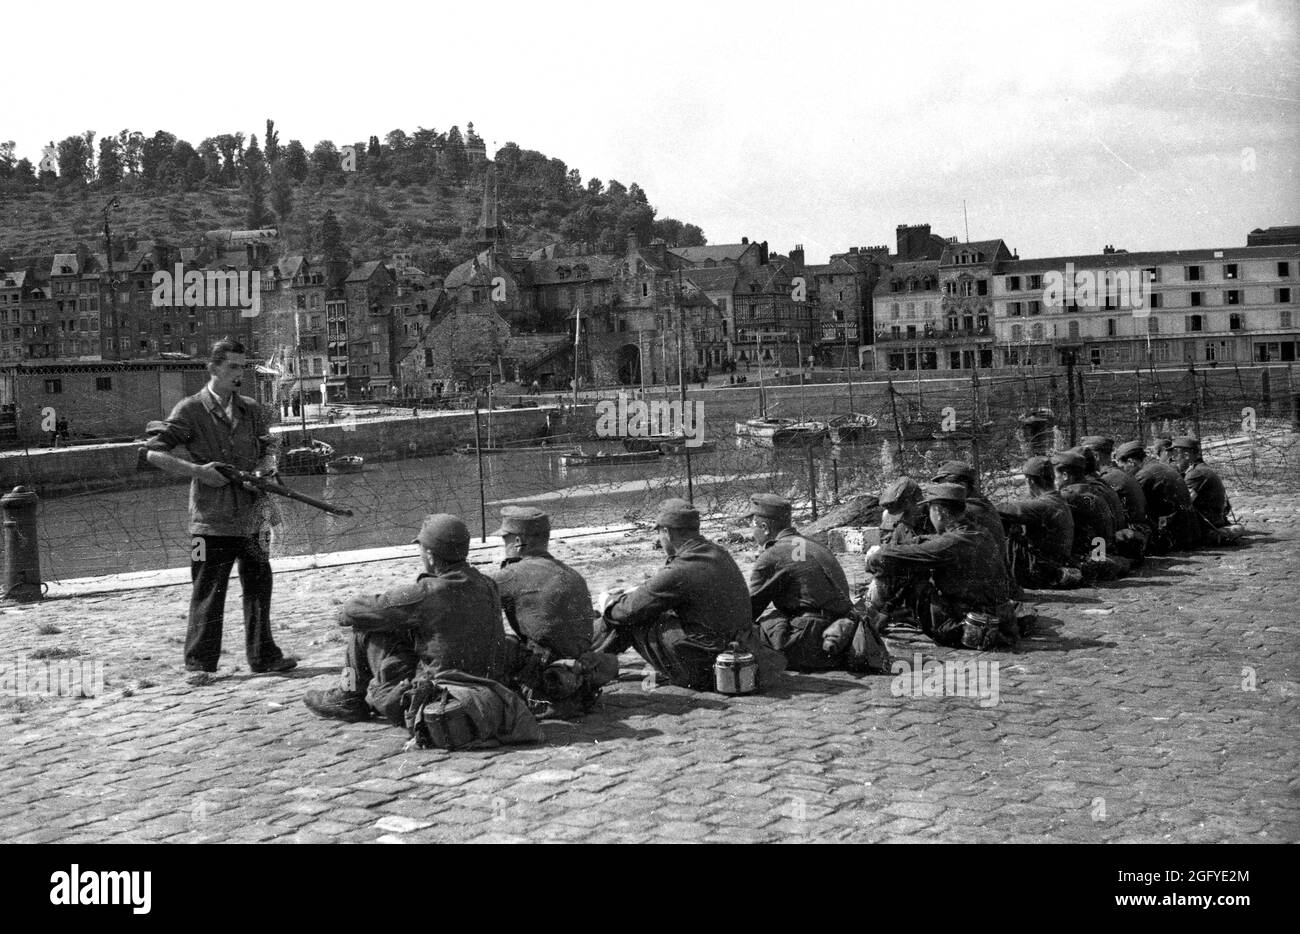 La liberazione di Honfleur, Normandia, Francia durante la seconda guerra mondiale. 26 agosto 1944. Un combattente di resistenza francese custodisce giovani soldati tedeschi dopo la loro resa. Foto Stock